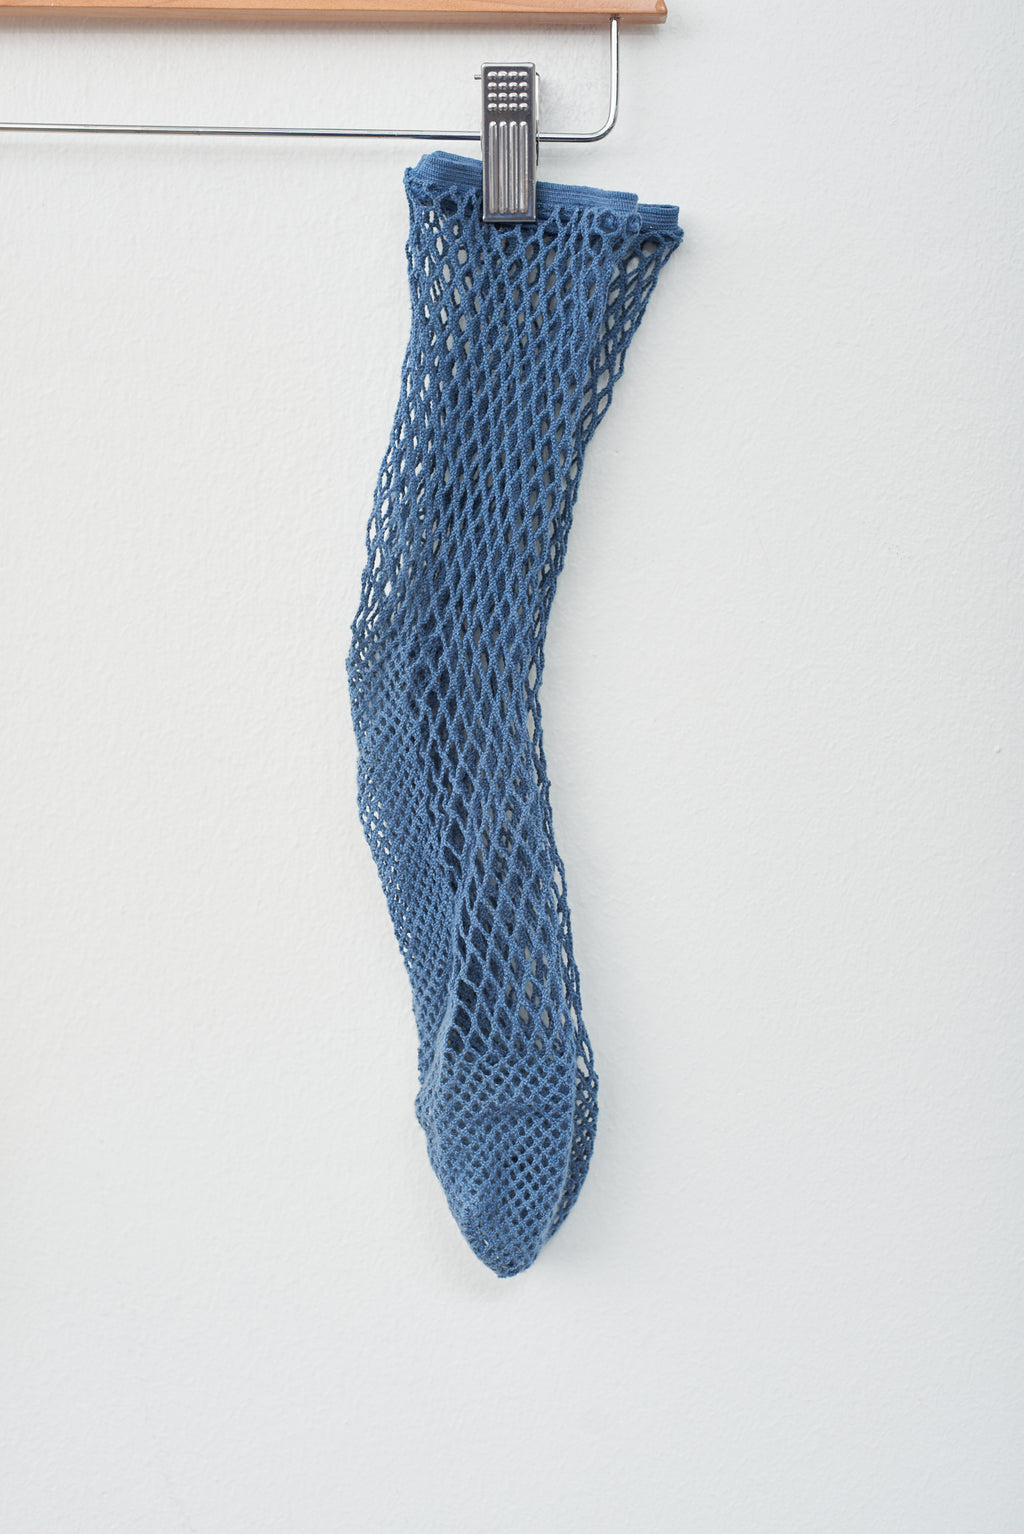 Fishnet Socks - Blue, Ivory